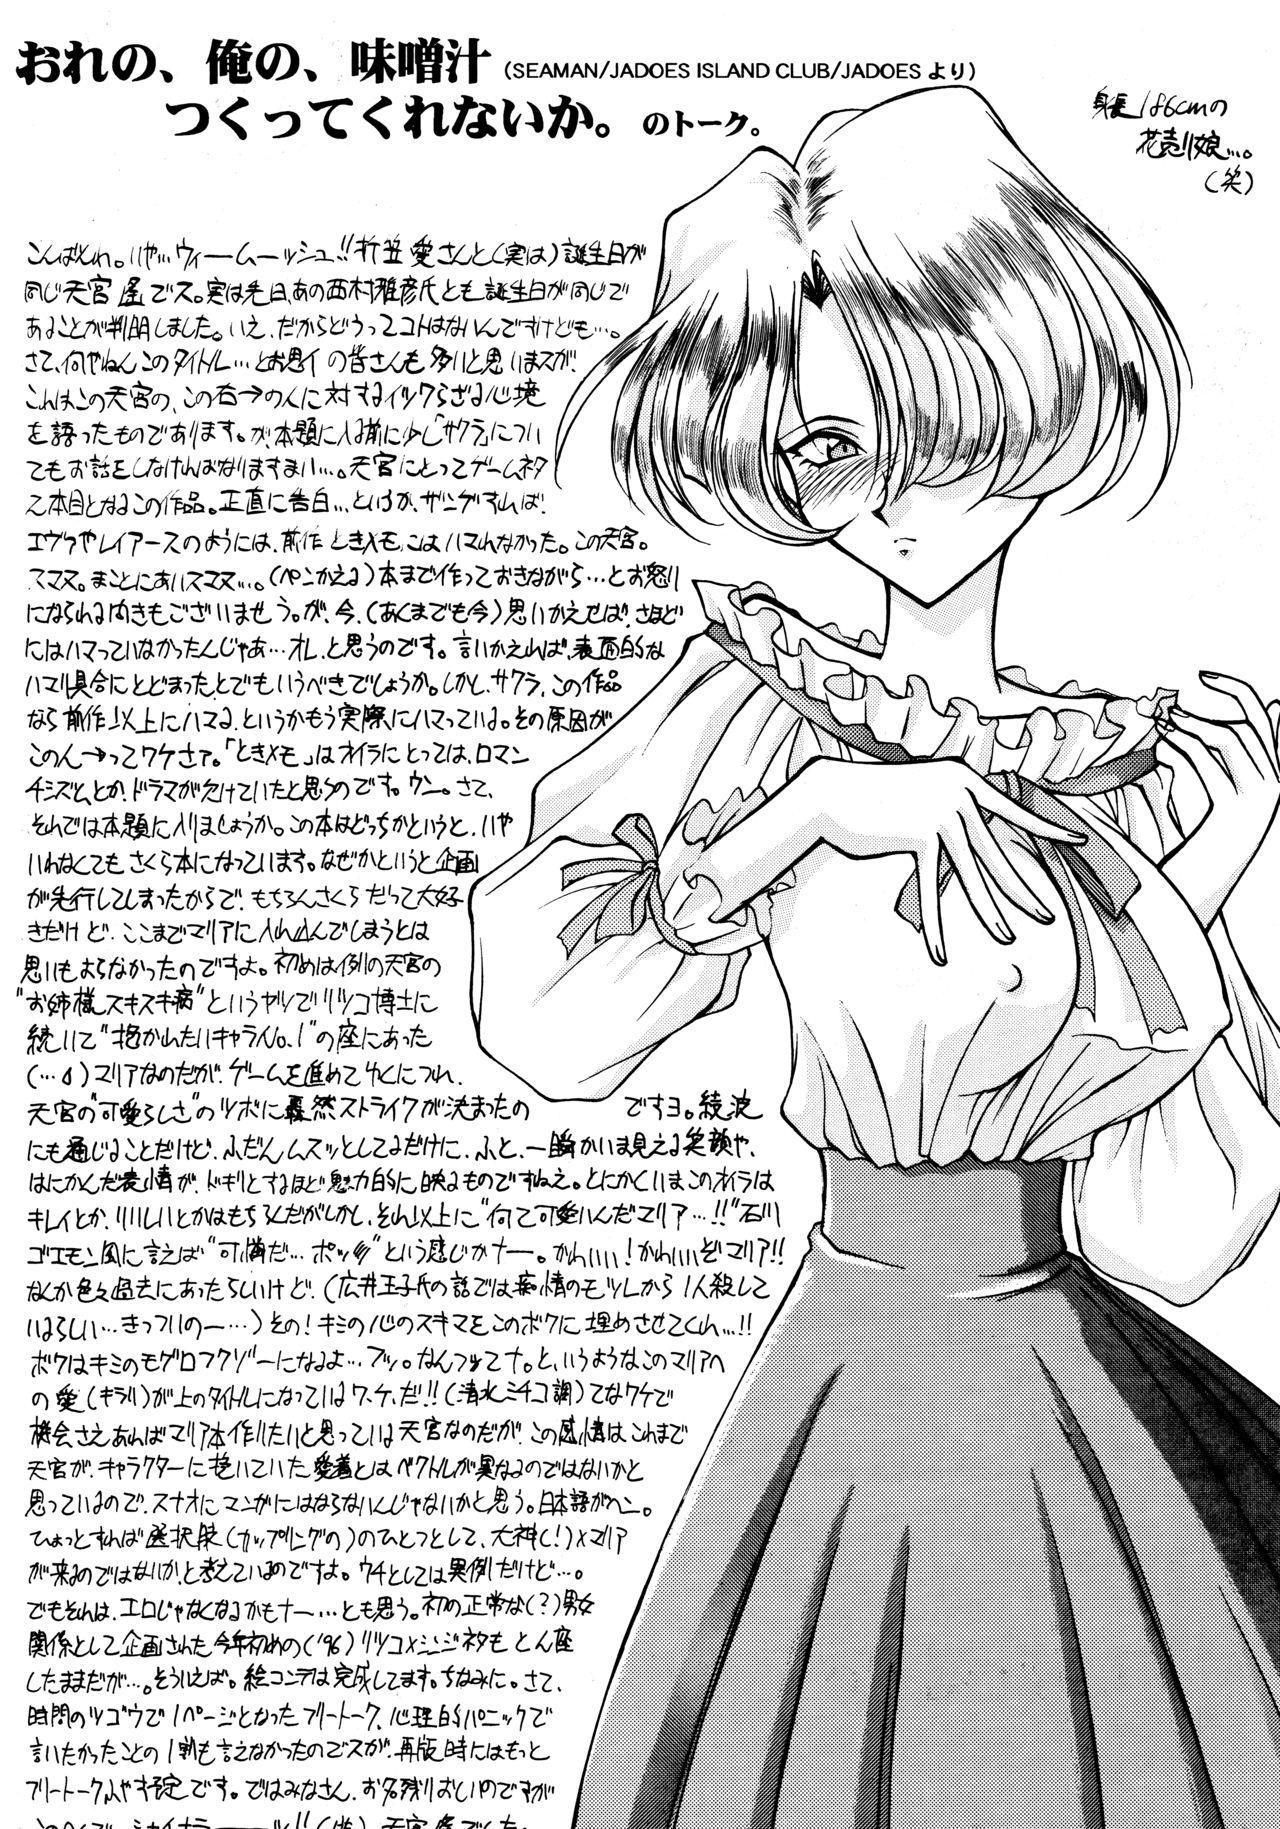 Fit Physical Love #2 - Sakura taisen Asslicking - Page 3